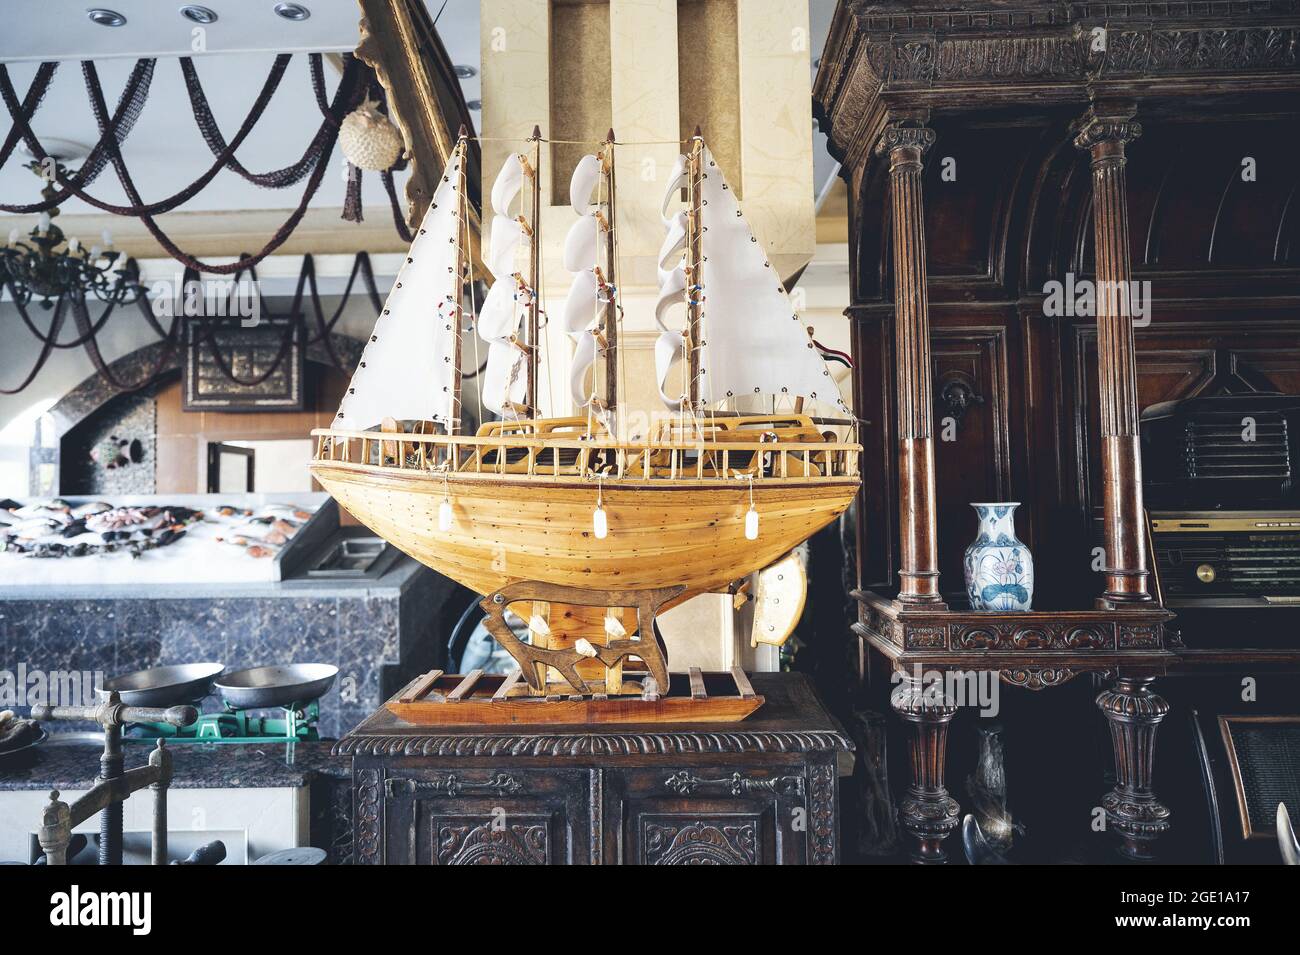 CAIRO, EGIPTO - 06 de junio de 2021: Un modelo en miniatura de un antiguo barco egipcio en exhibición en el Museo Egipcio de El Cairo Foto de stock